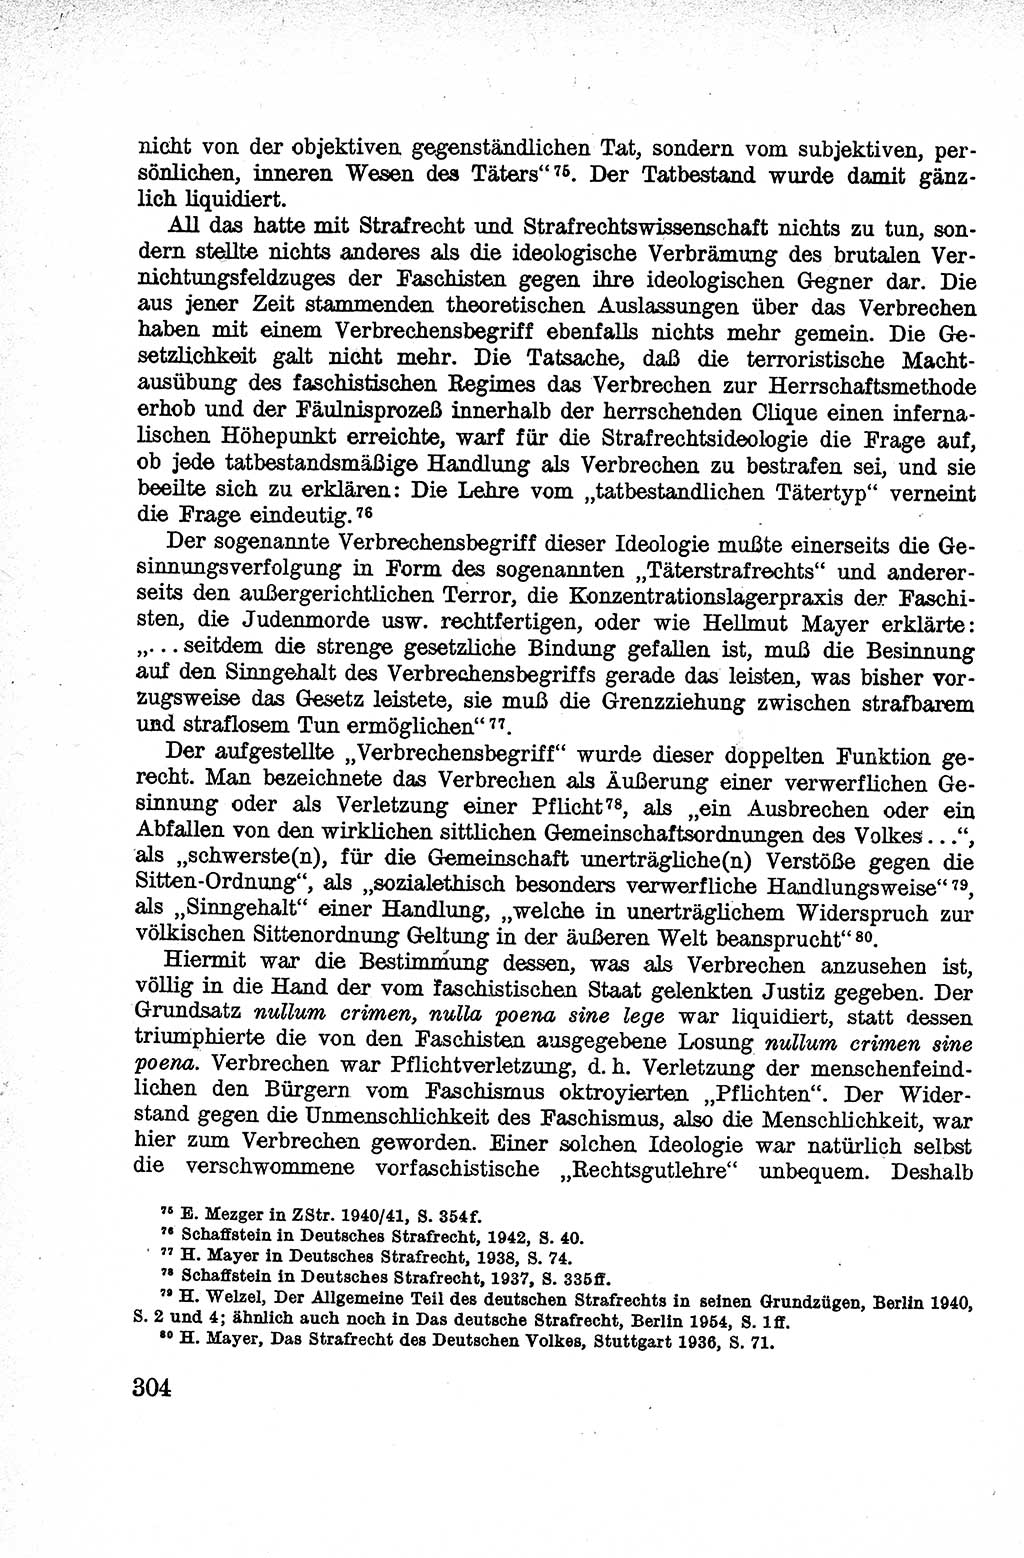 Lehrbuch des Strafrechts der Deutschen Demokratischen Republik (DDR), Allgemeiner Teil 1959, Seite 304 (Lb. Strafr. DDR AT 1959, S. 304)